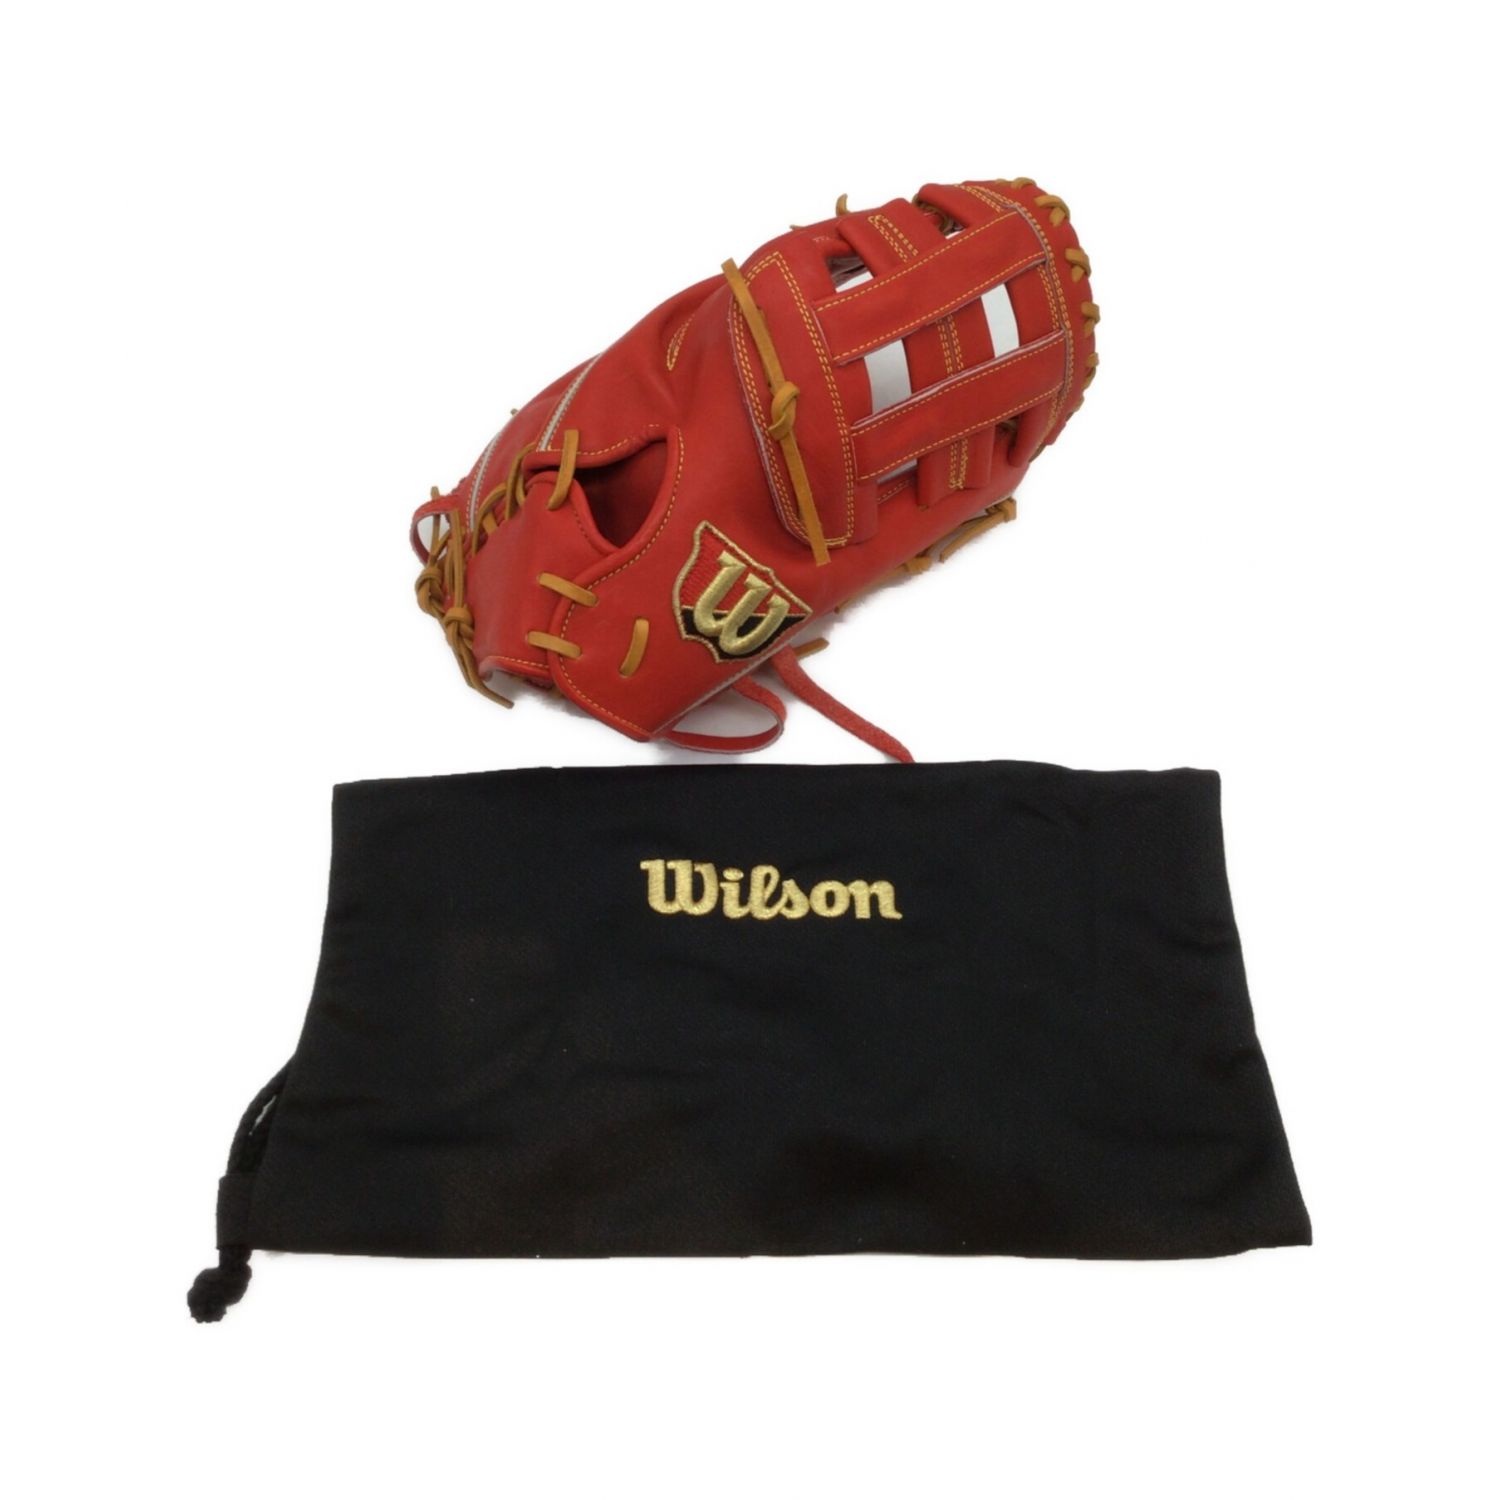 Wilson (ウィルソン) 硬式グローブ SIZE 約31cm オレンジ ファースト